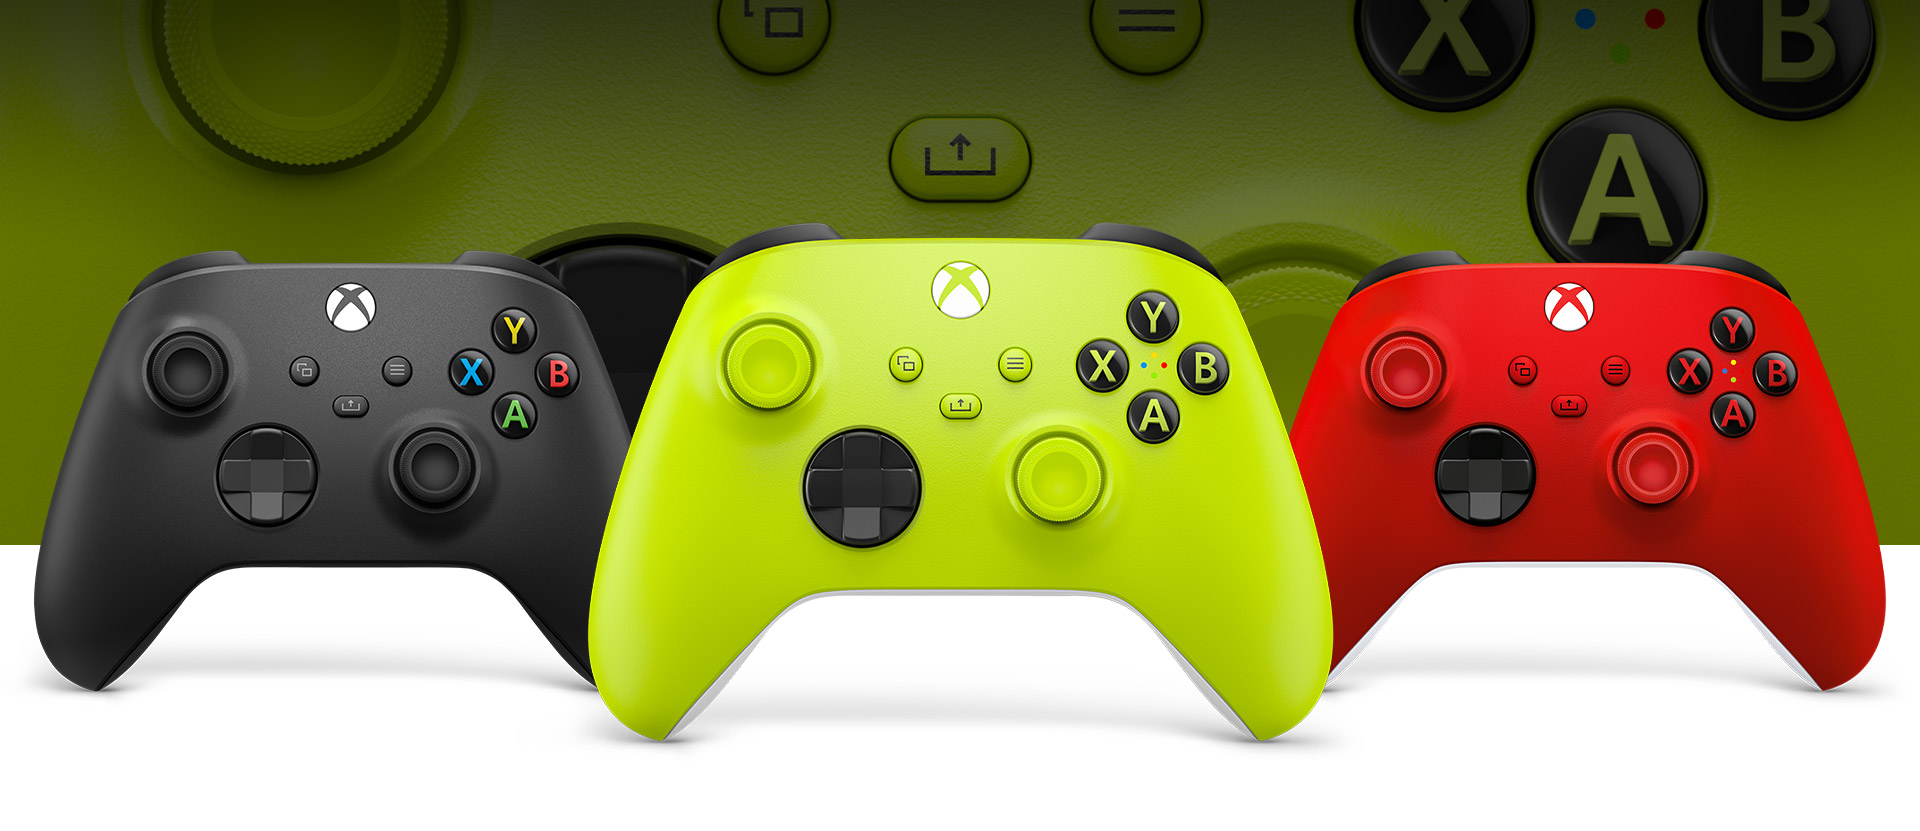 Control Xbox en voltios eléctricos delante, con controles de color carbón negro y rojo radiante al lado.